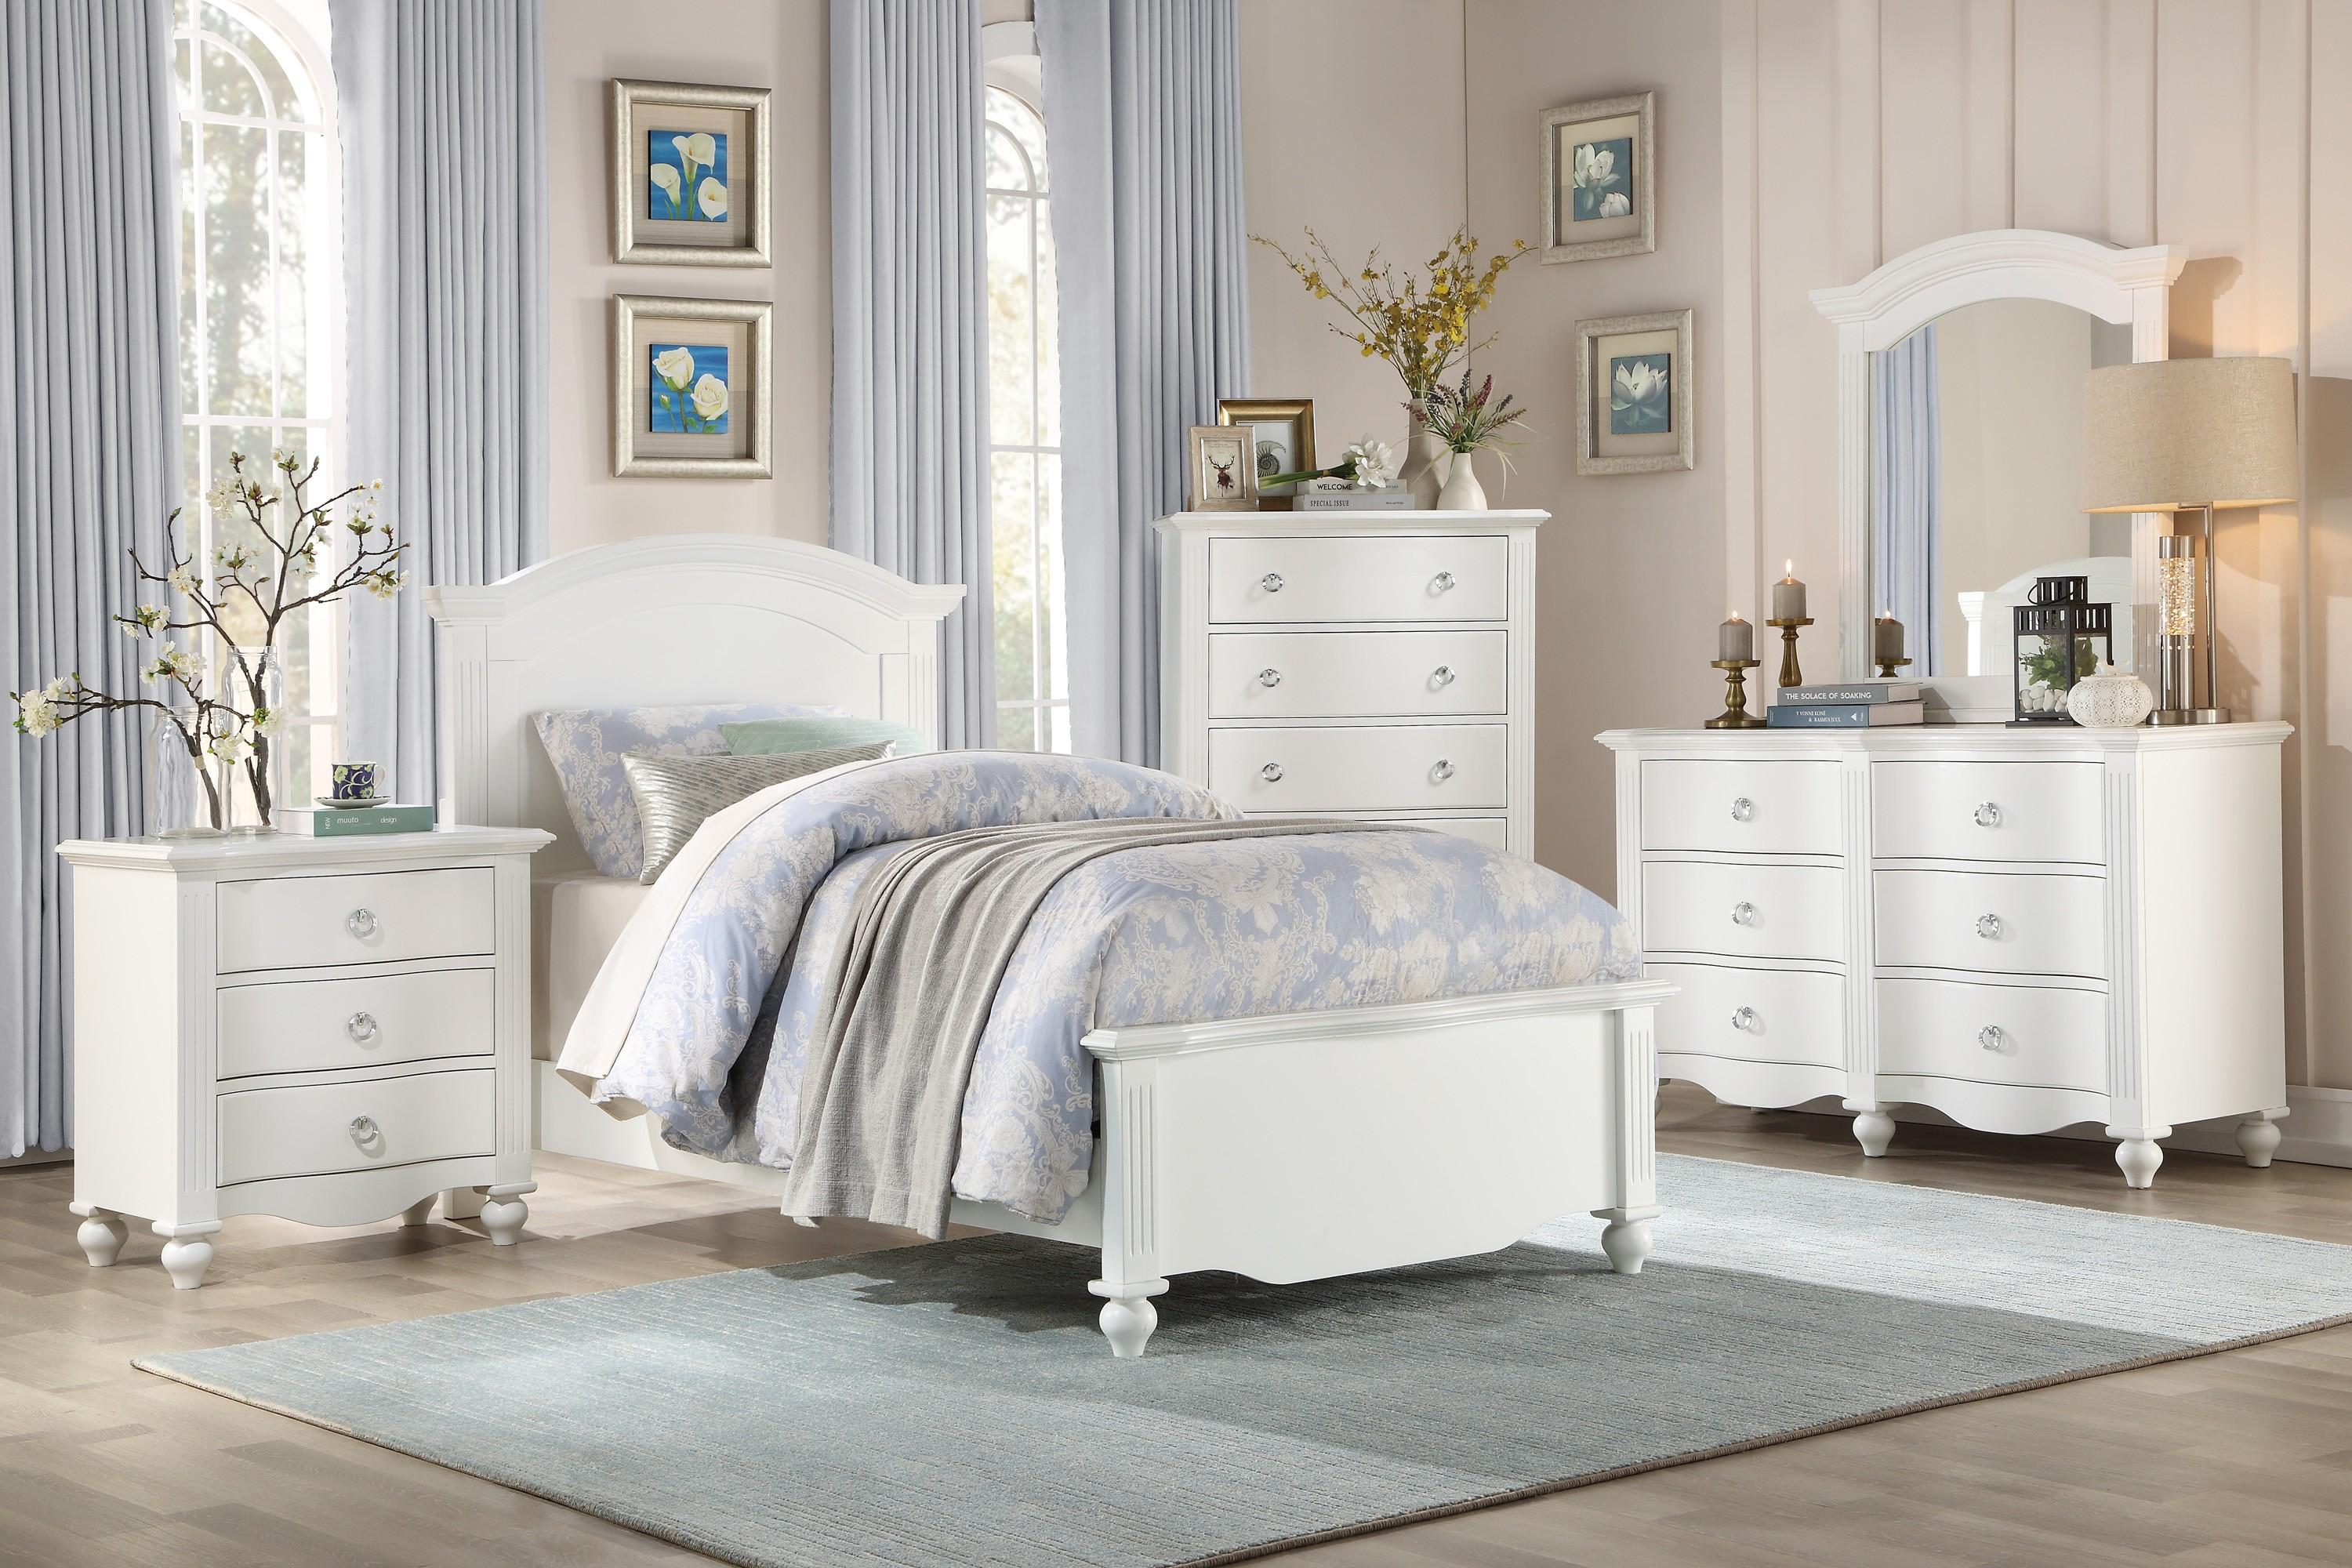 

    
Transitional White Wood Full Bedroom Set 6pcs Homelegance 2058WHF-1* Meghan
